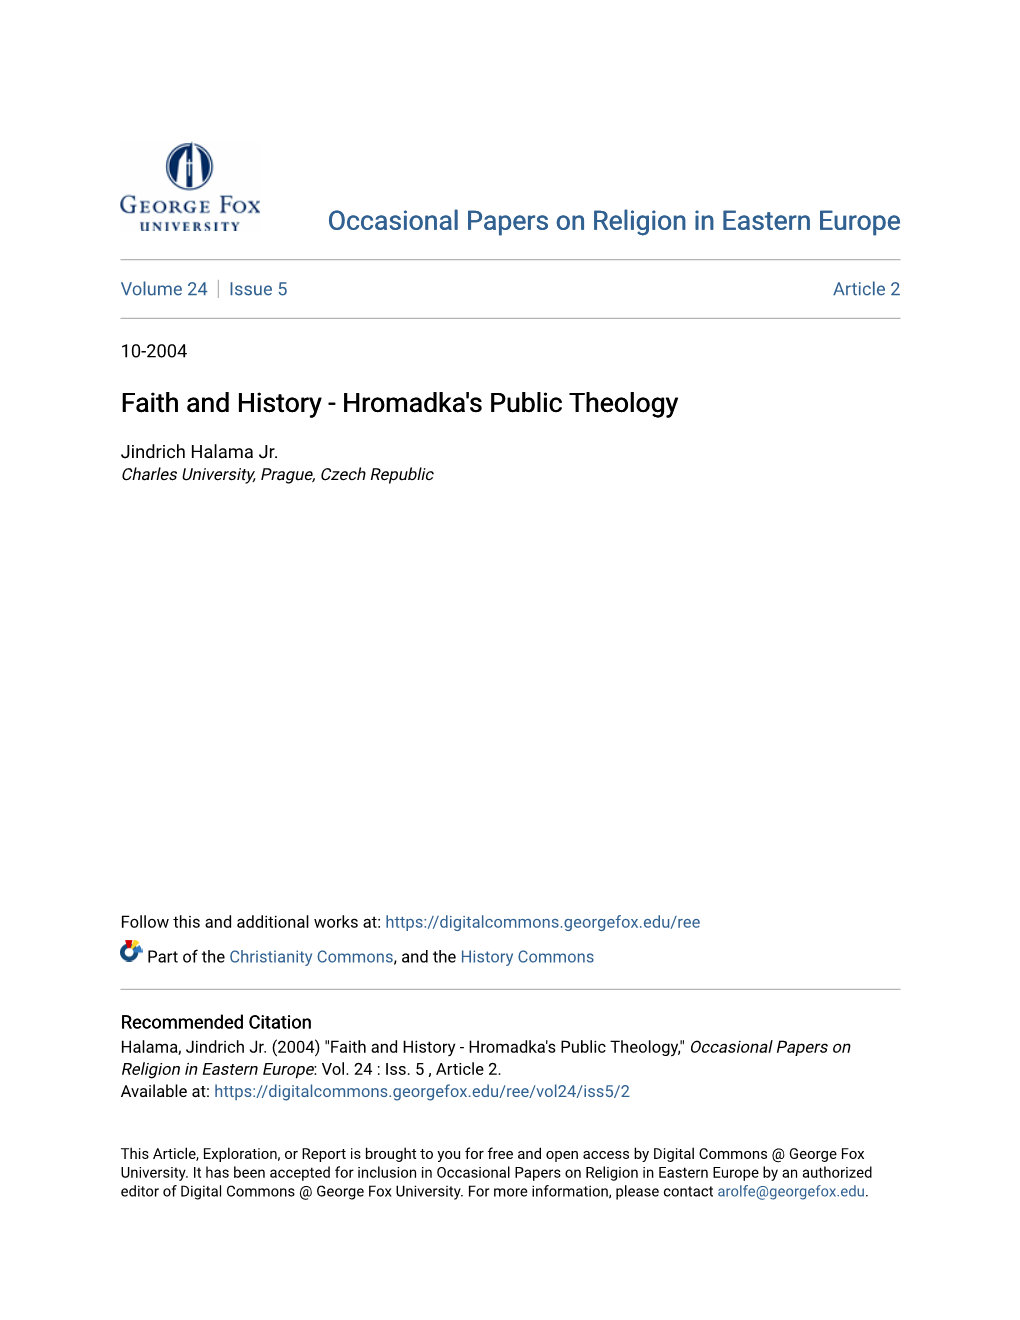 Faith and History - Hromadka's Public Theology